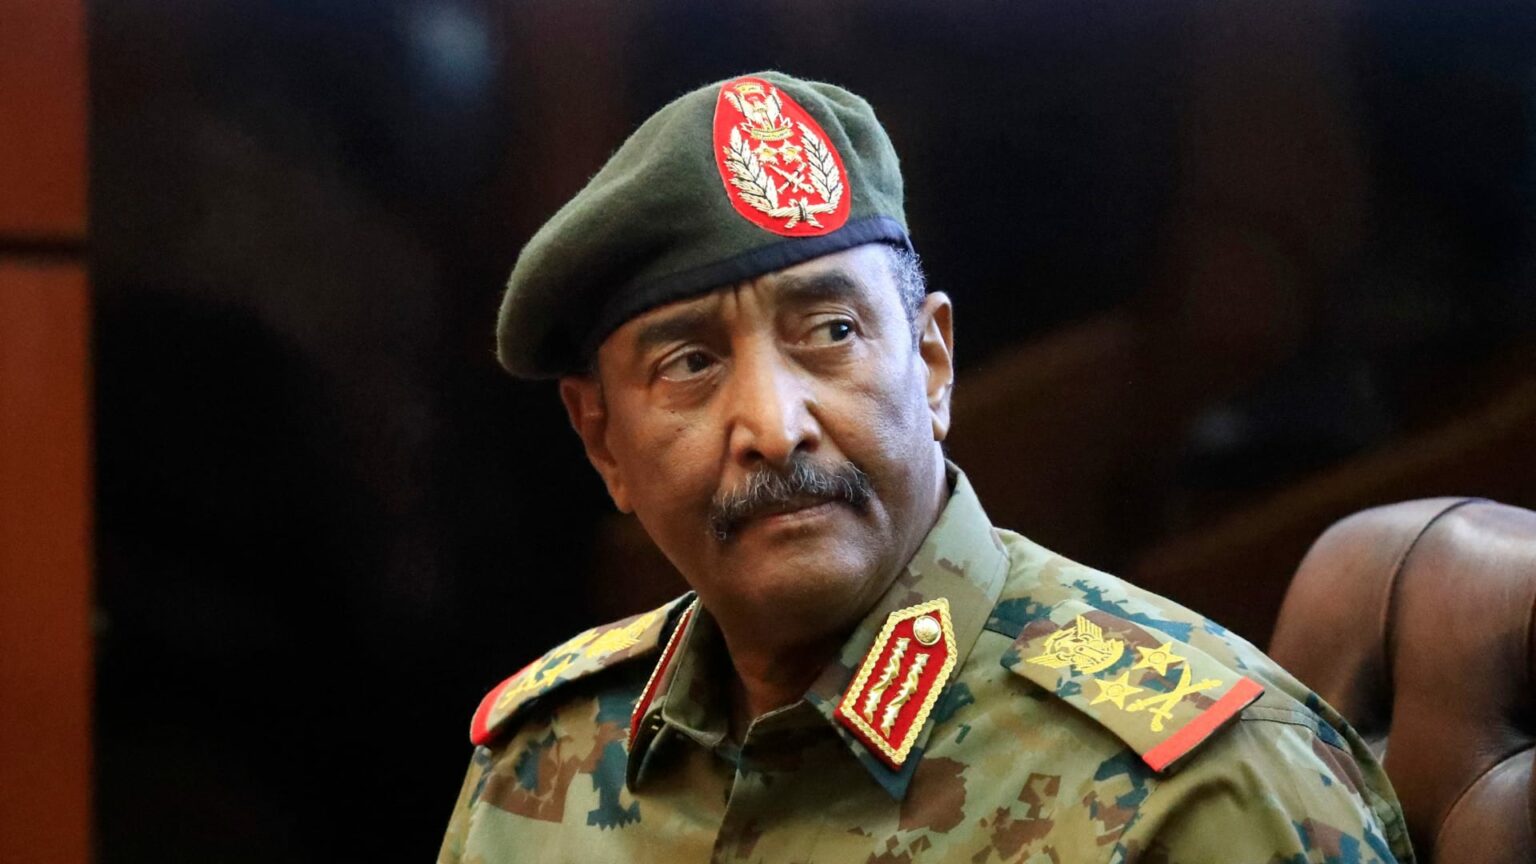 الاستيعاب الصعب: تحديات دمج قوات الدعم السريع في السودان